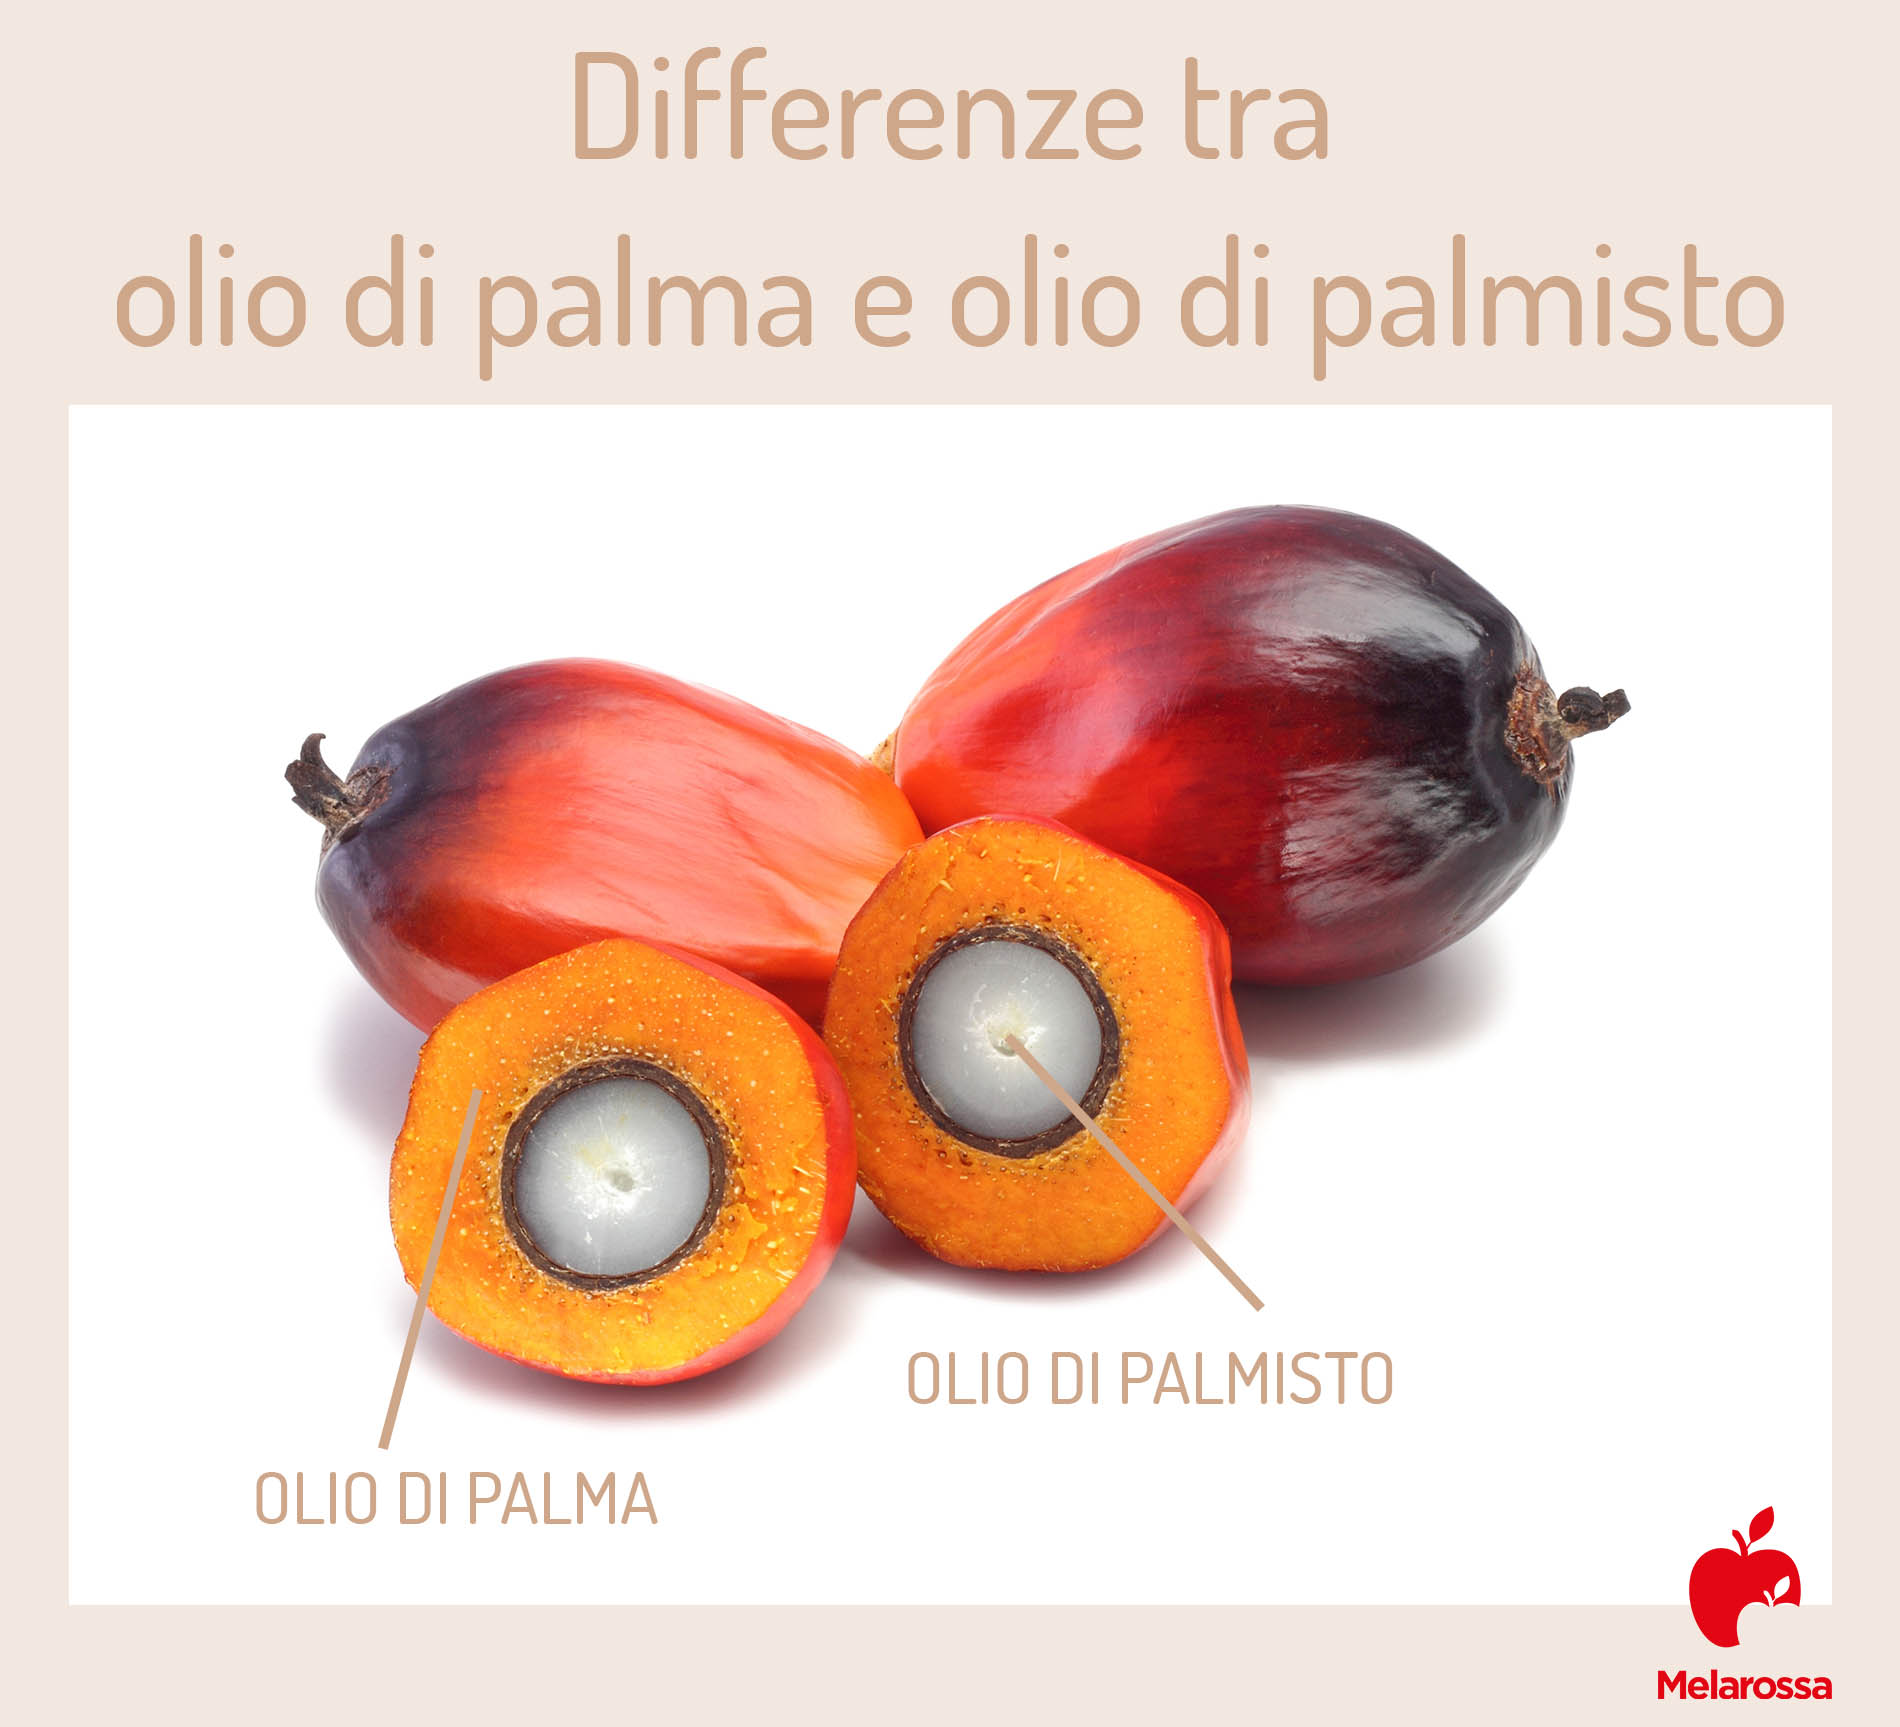 olio di palma: differenze con olio di palmisto